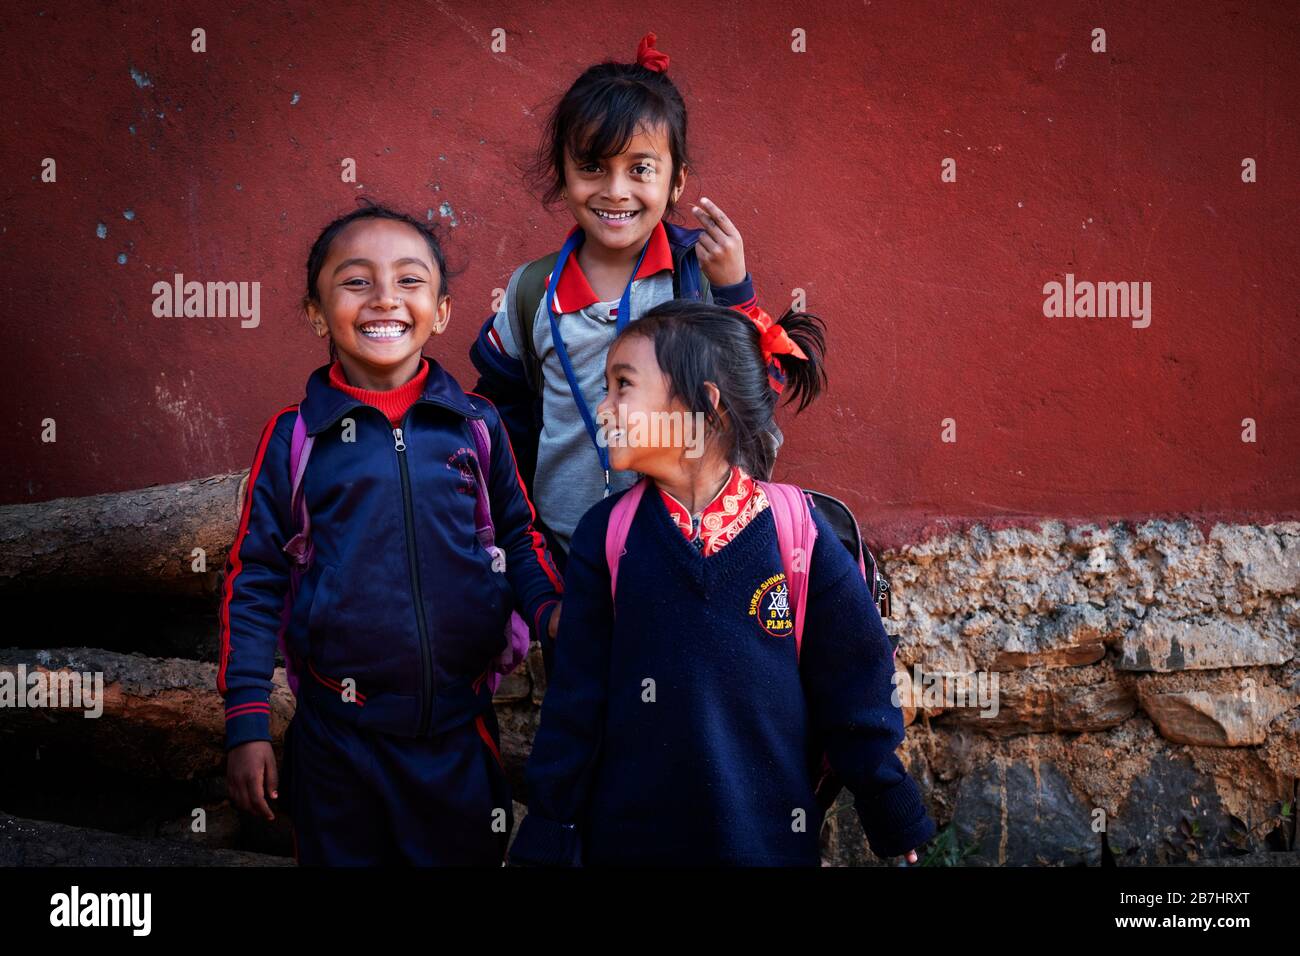 Porträts von Menschen, Pokhara, Nepal Stockfoto